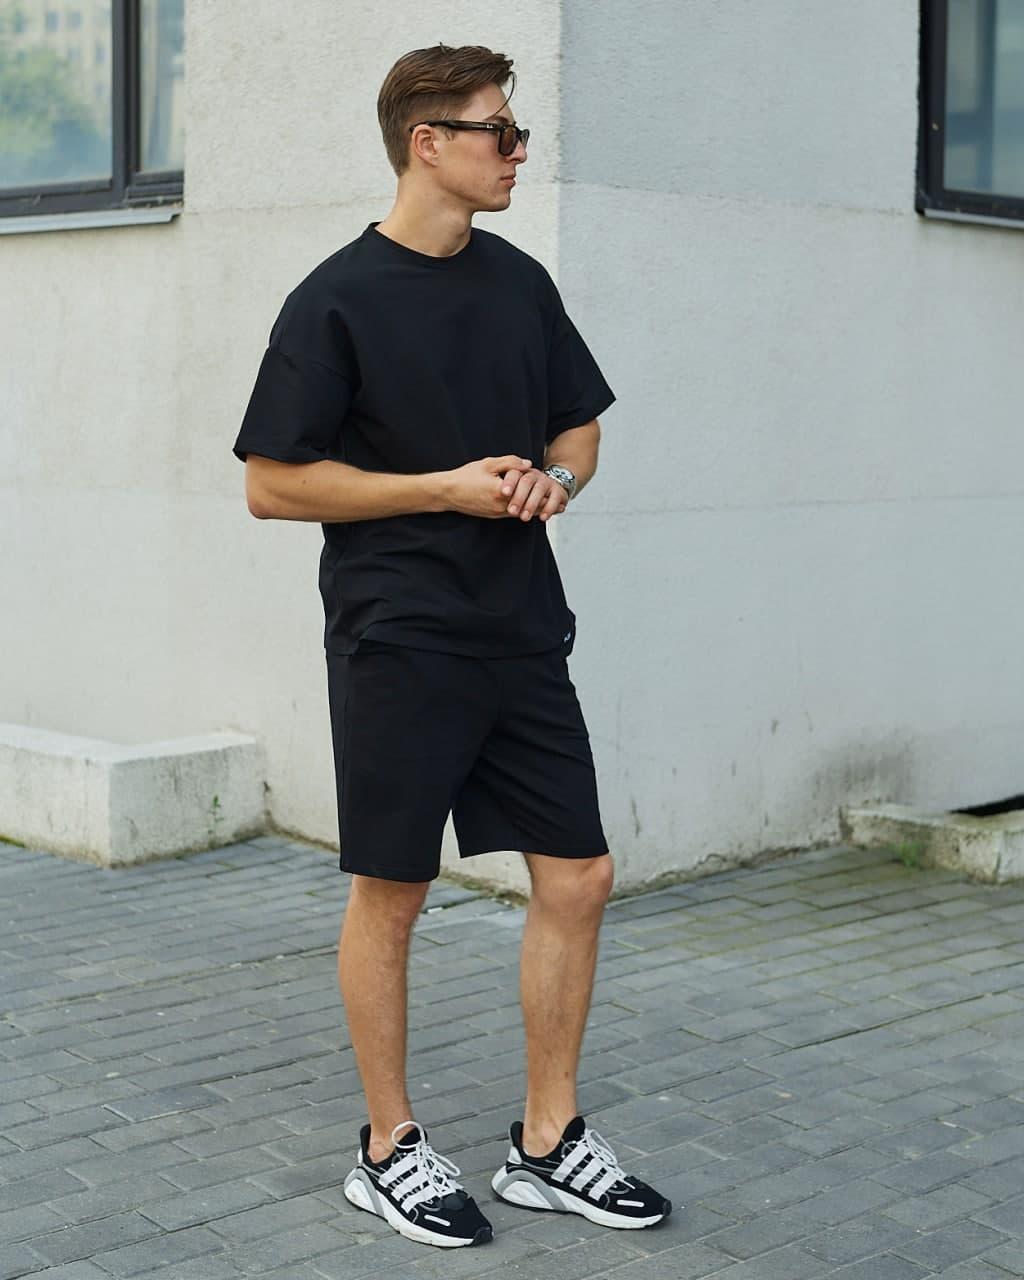 Літній комплект чорна футболка чоловіча Quil (Квіл) чорні шорти чоловічі Duncan (Дункан) TURWEAR - Фото 1